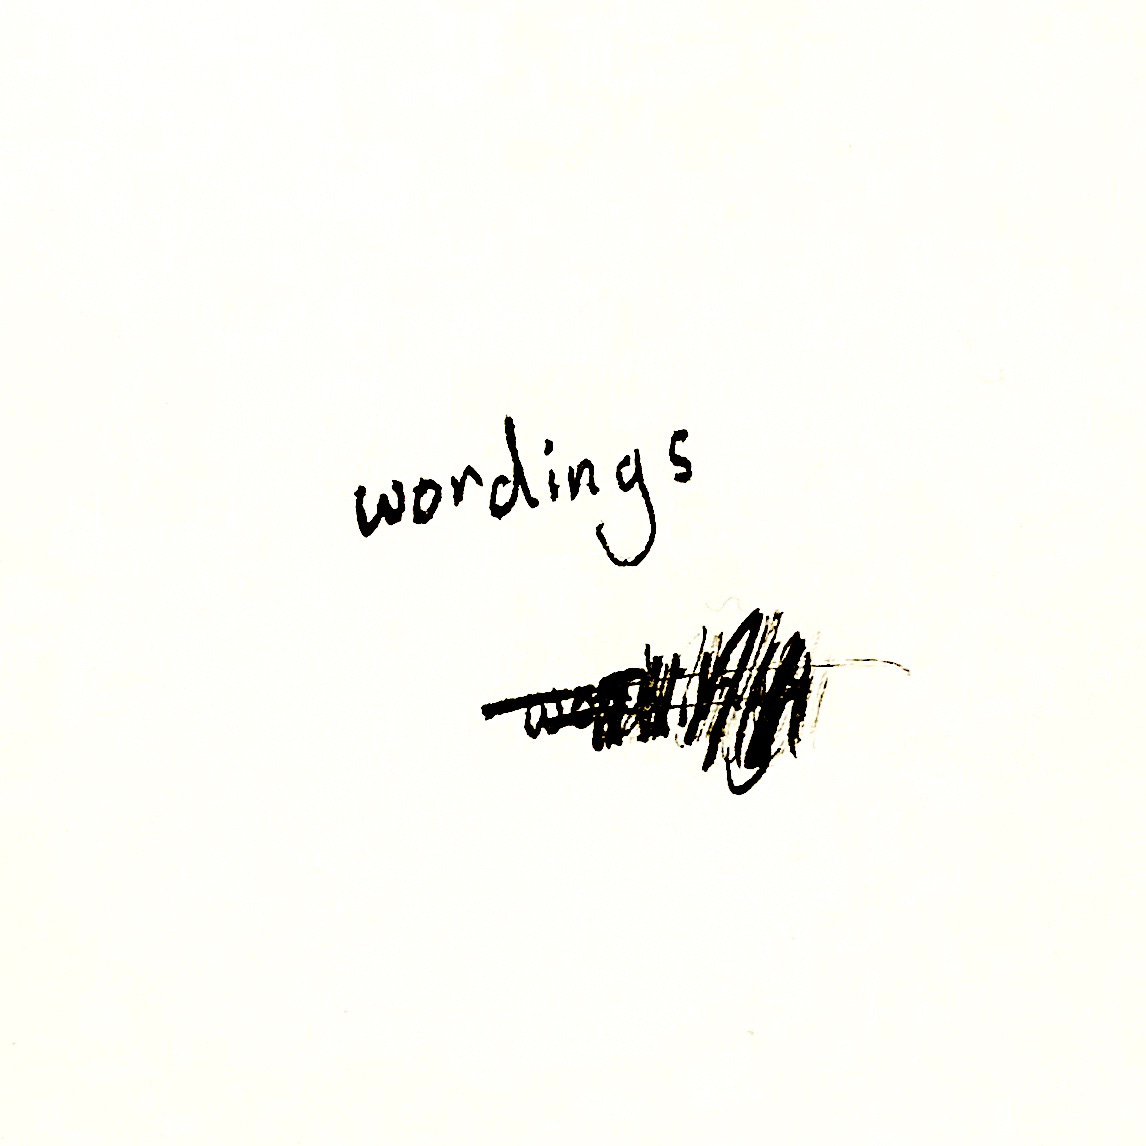 Wordings